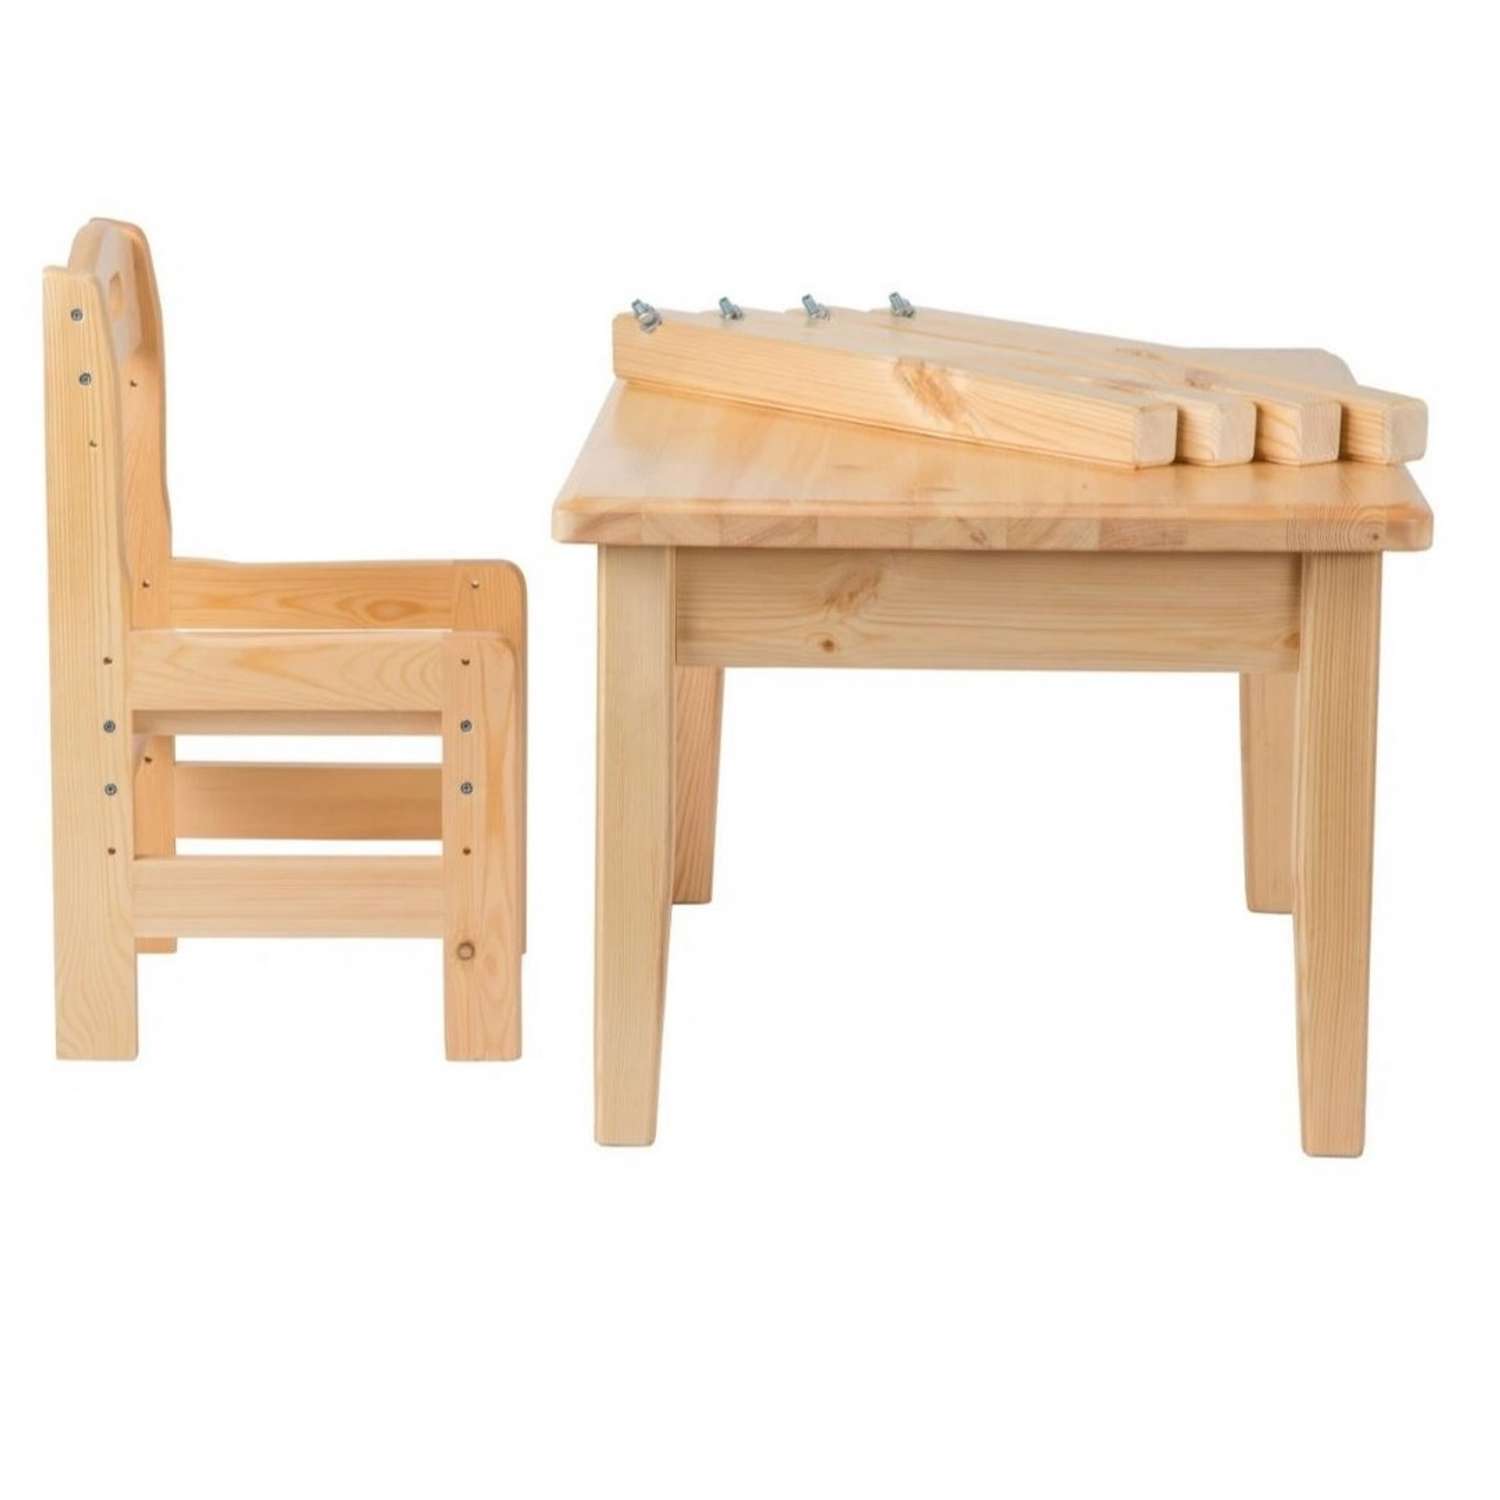 Набор Мебель для дошколят стол со стульчиком регулируемый для детей от 2 до 6 лет - фото 1